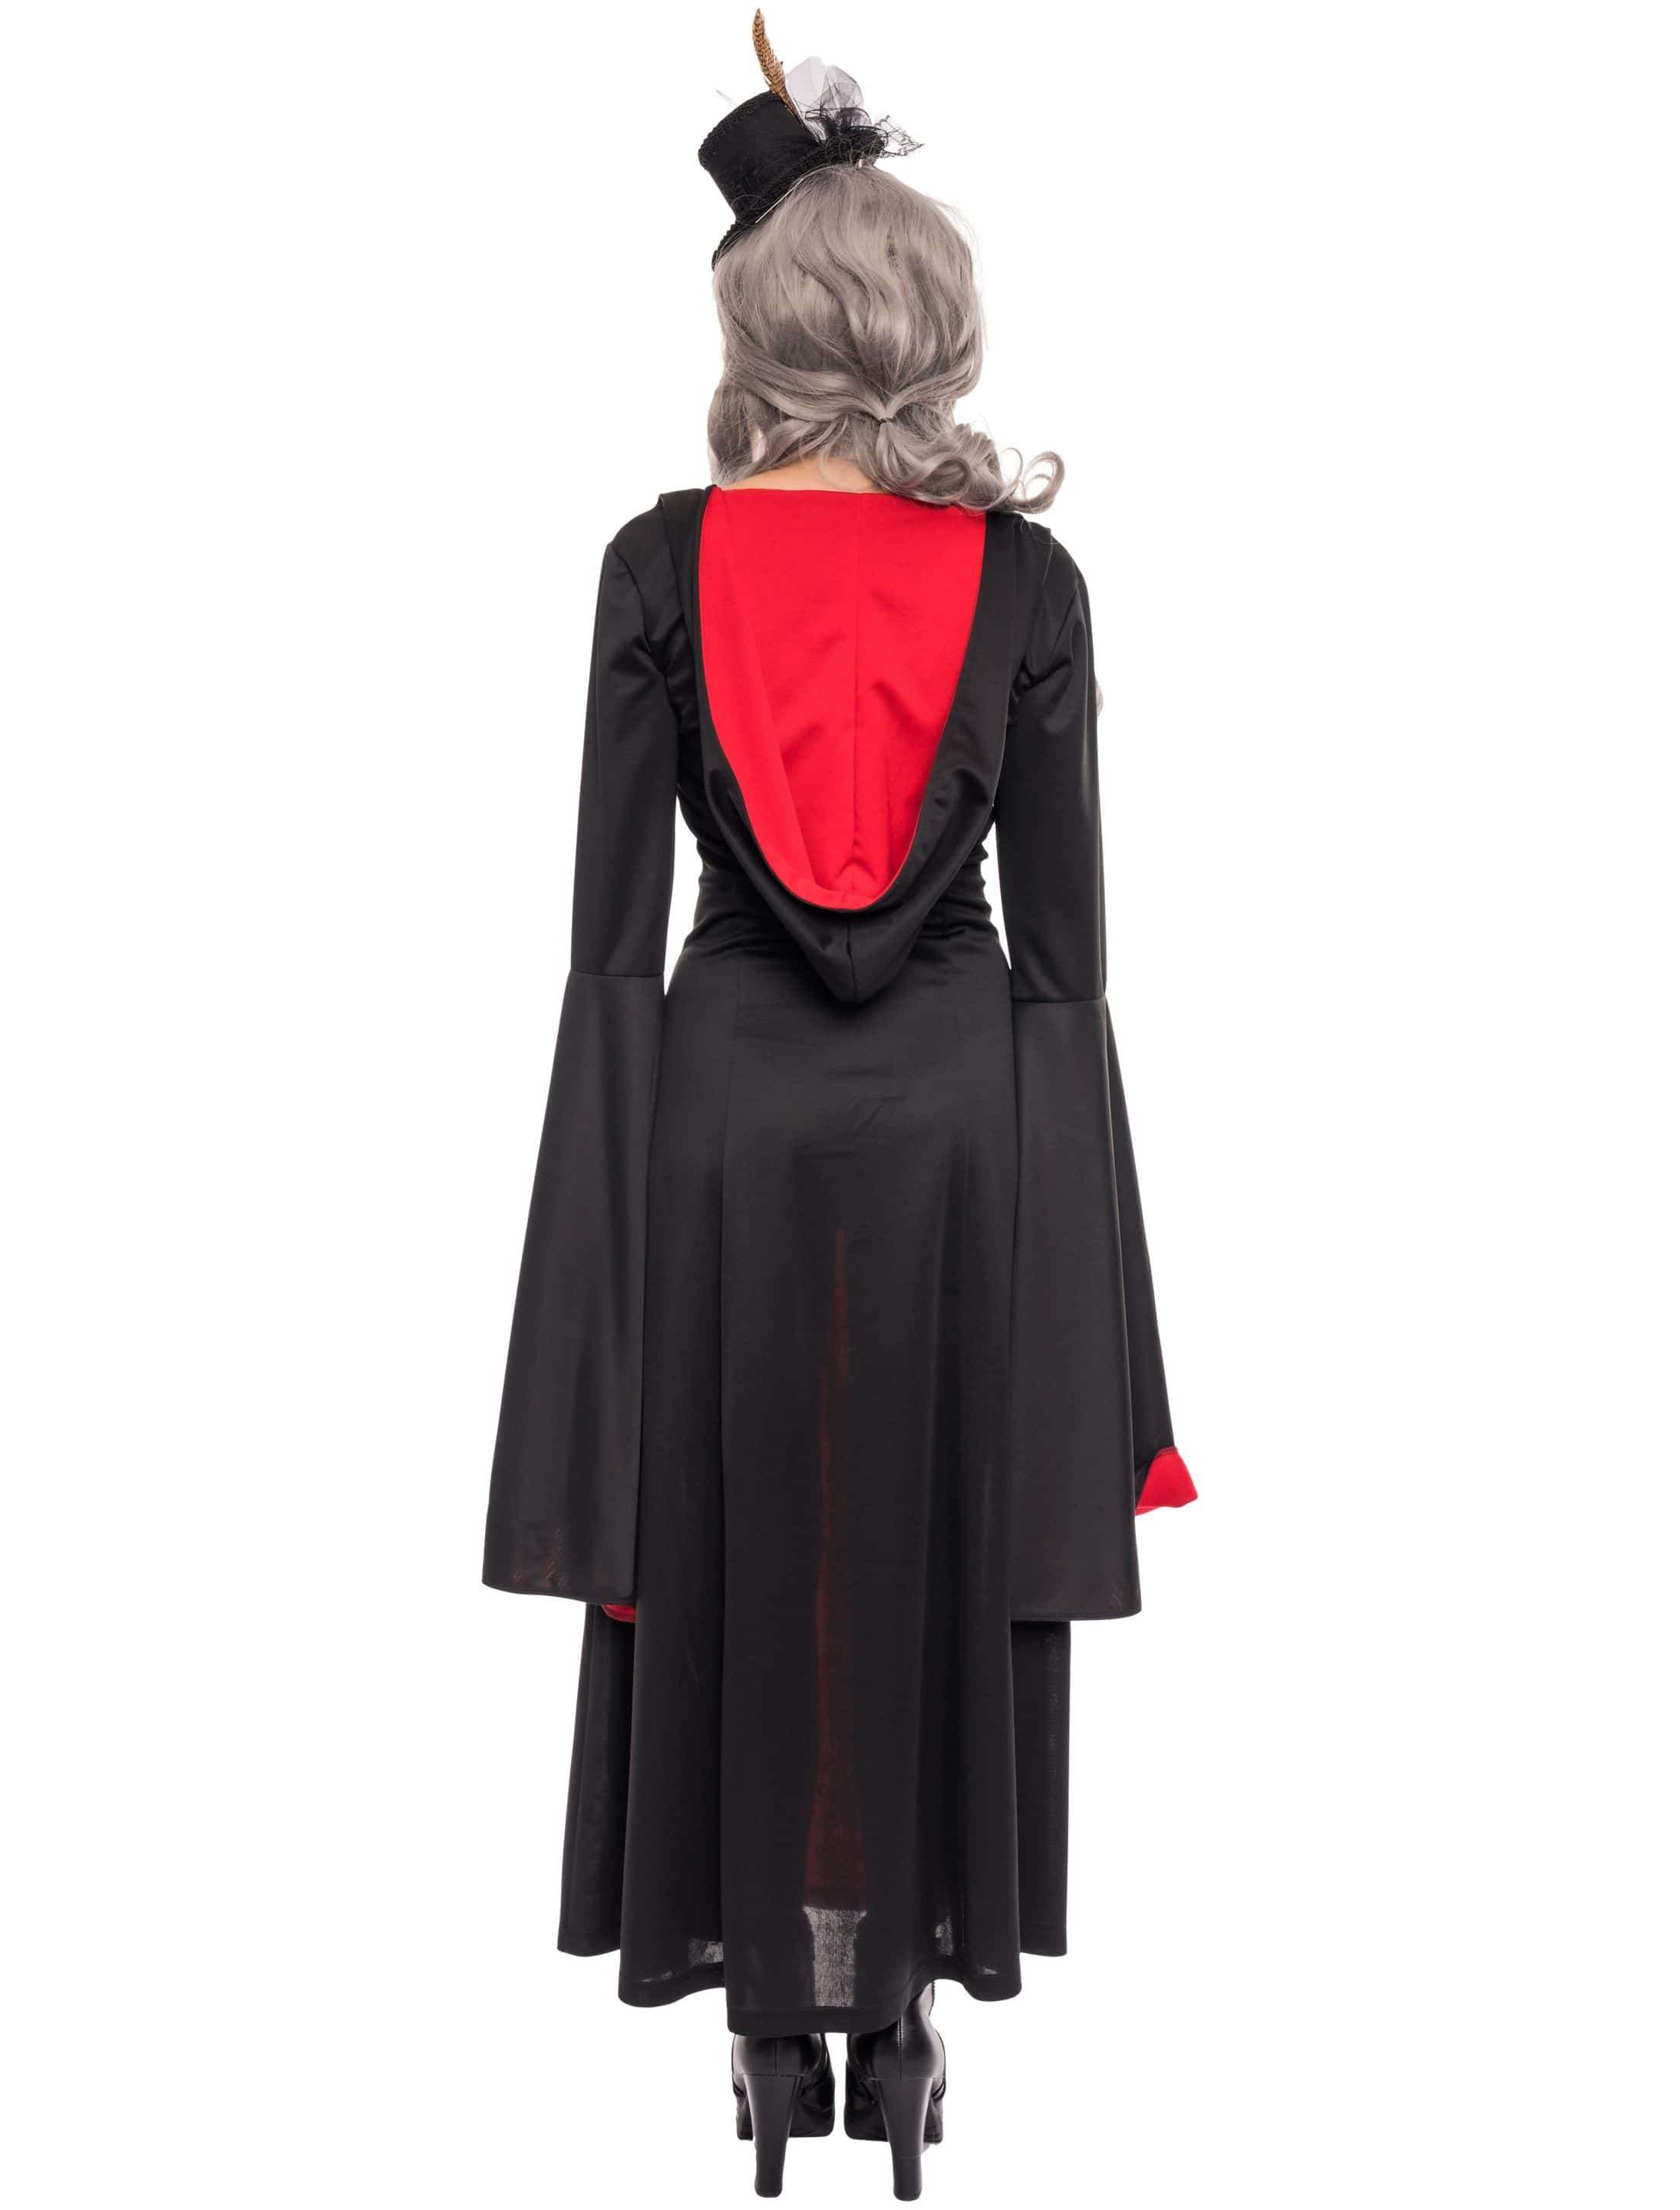 Kleid mit Kapuze Damen schwarz/rot 2XL